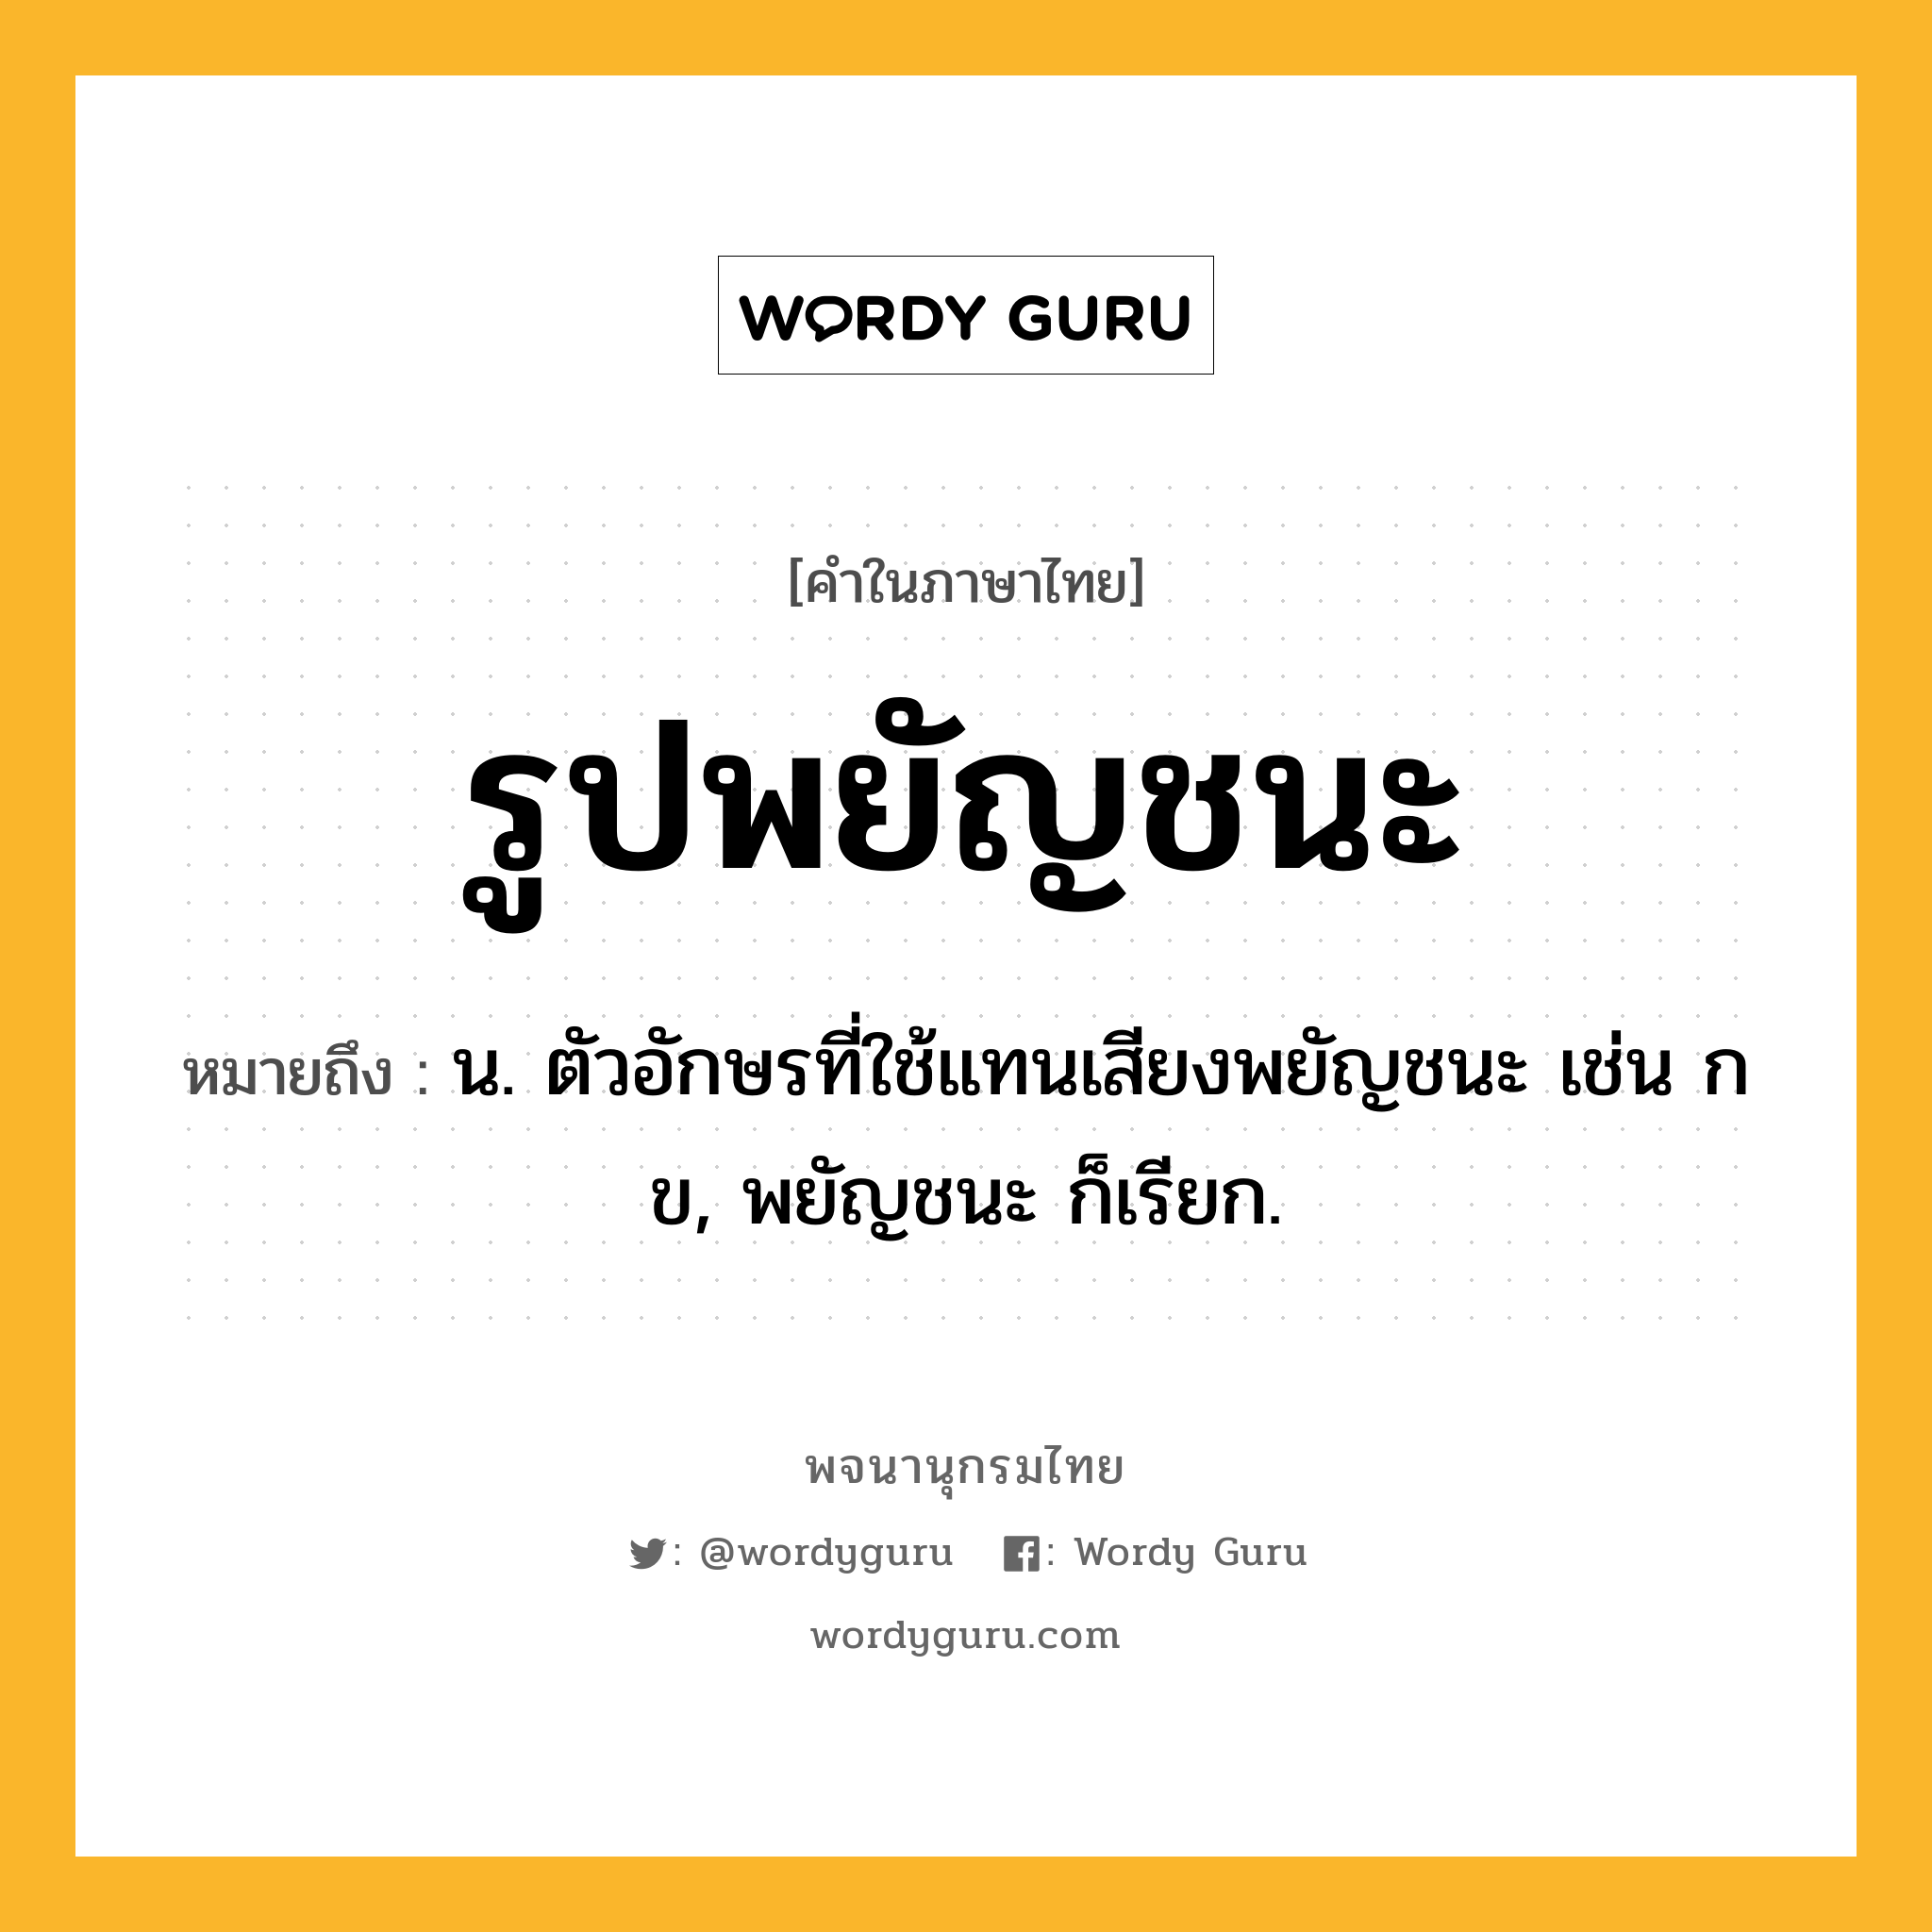 รูปพยัญชนะ หมายถึงอะไร?, คำในภาษาไทย รูปพยัญชนะ หมายถึง น. ตัวอักษรที่ใช้แทนเสียงพยัญชนะ เช่น ก ข, พยัญชนะ ก็เรียก.